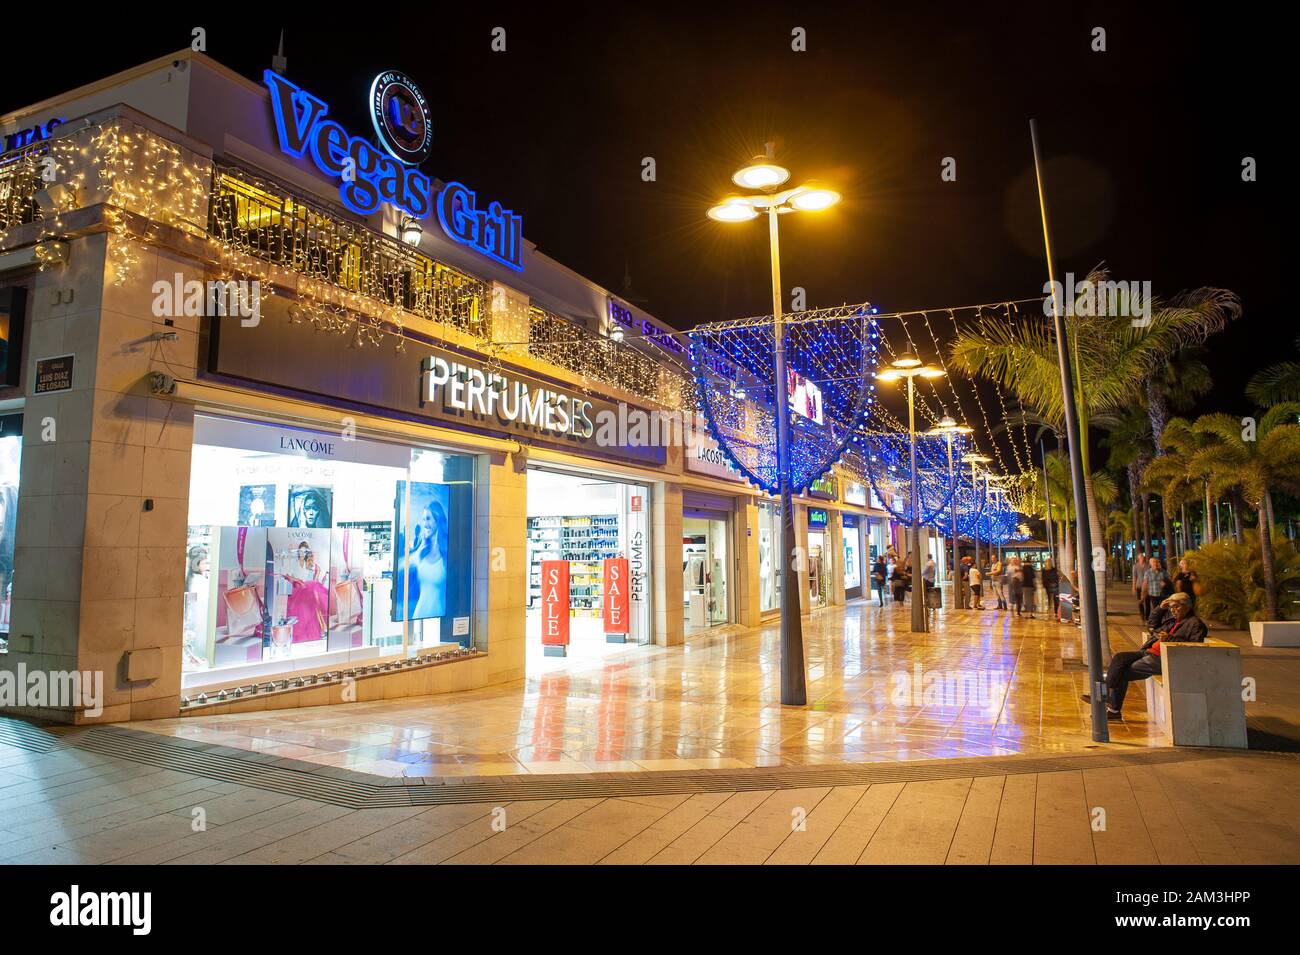 LOS CRISTIANOS - TENERIFE, Spagna - 29 DIC 2019: Shopping center presso il viale Avenida de las Americas nella famosa città di Los Cristianos sulla ca Foto Stock